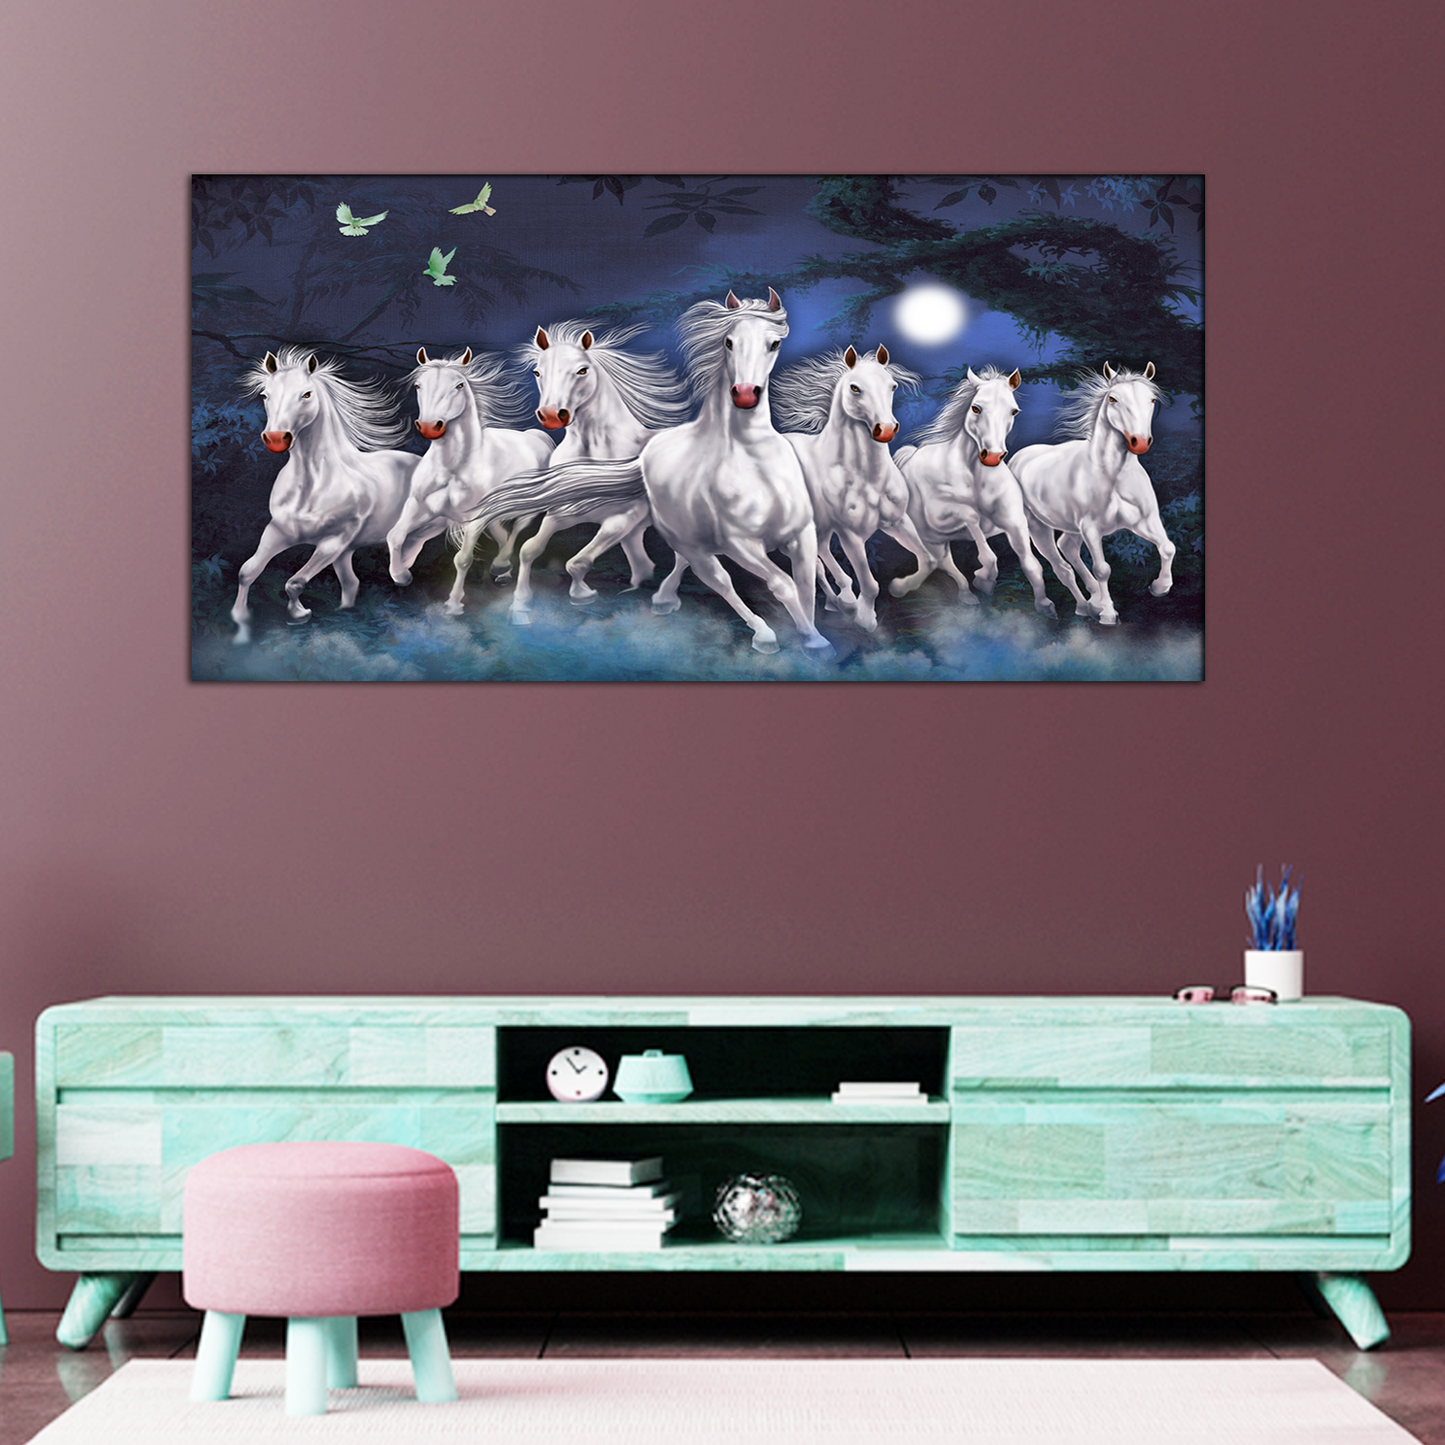 Horses Running at Night Canvas Print Wall Painting